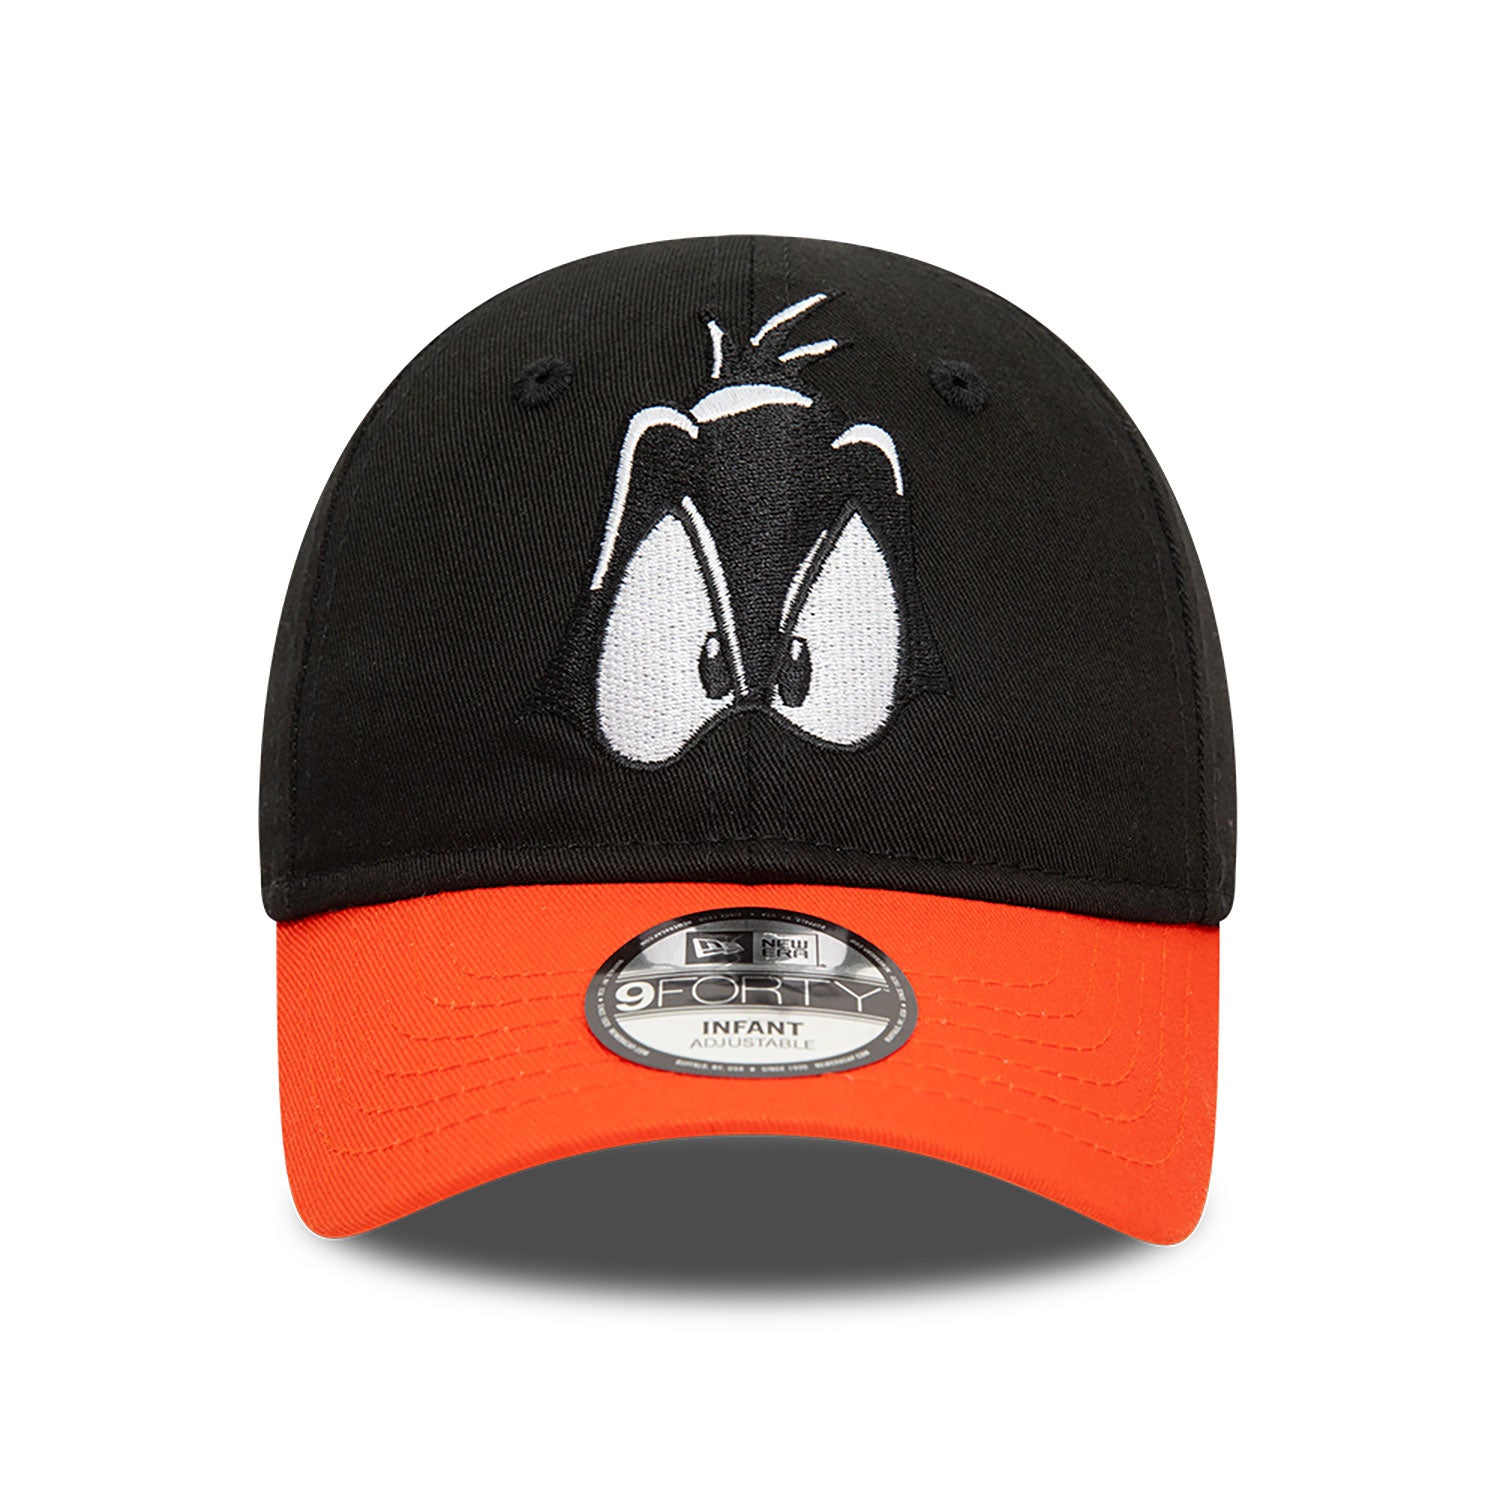 New era casquette bébé élastique "baby Daffy Duck" Black/orange (NEW Collection)